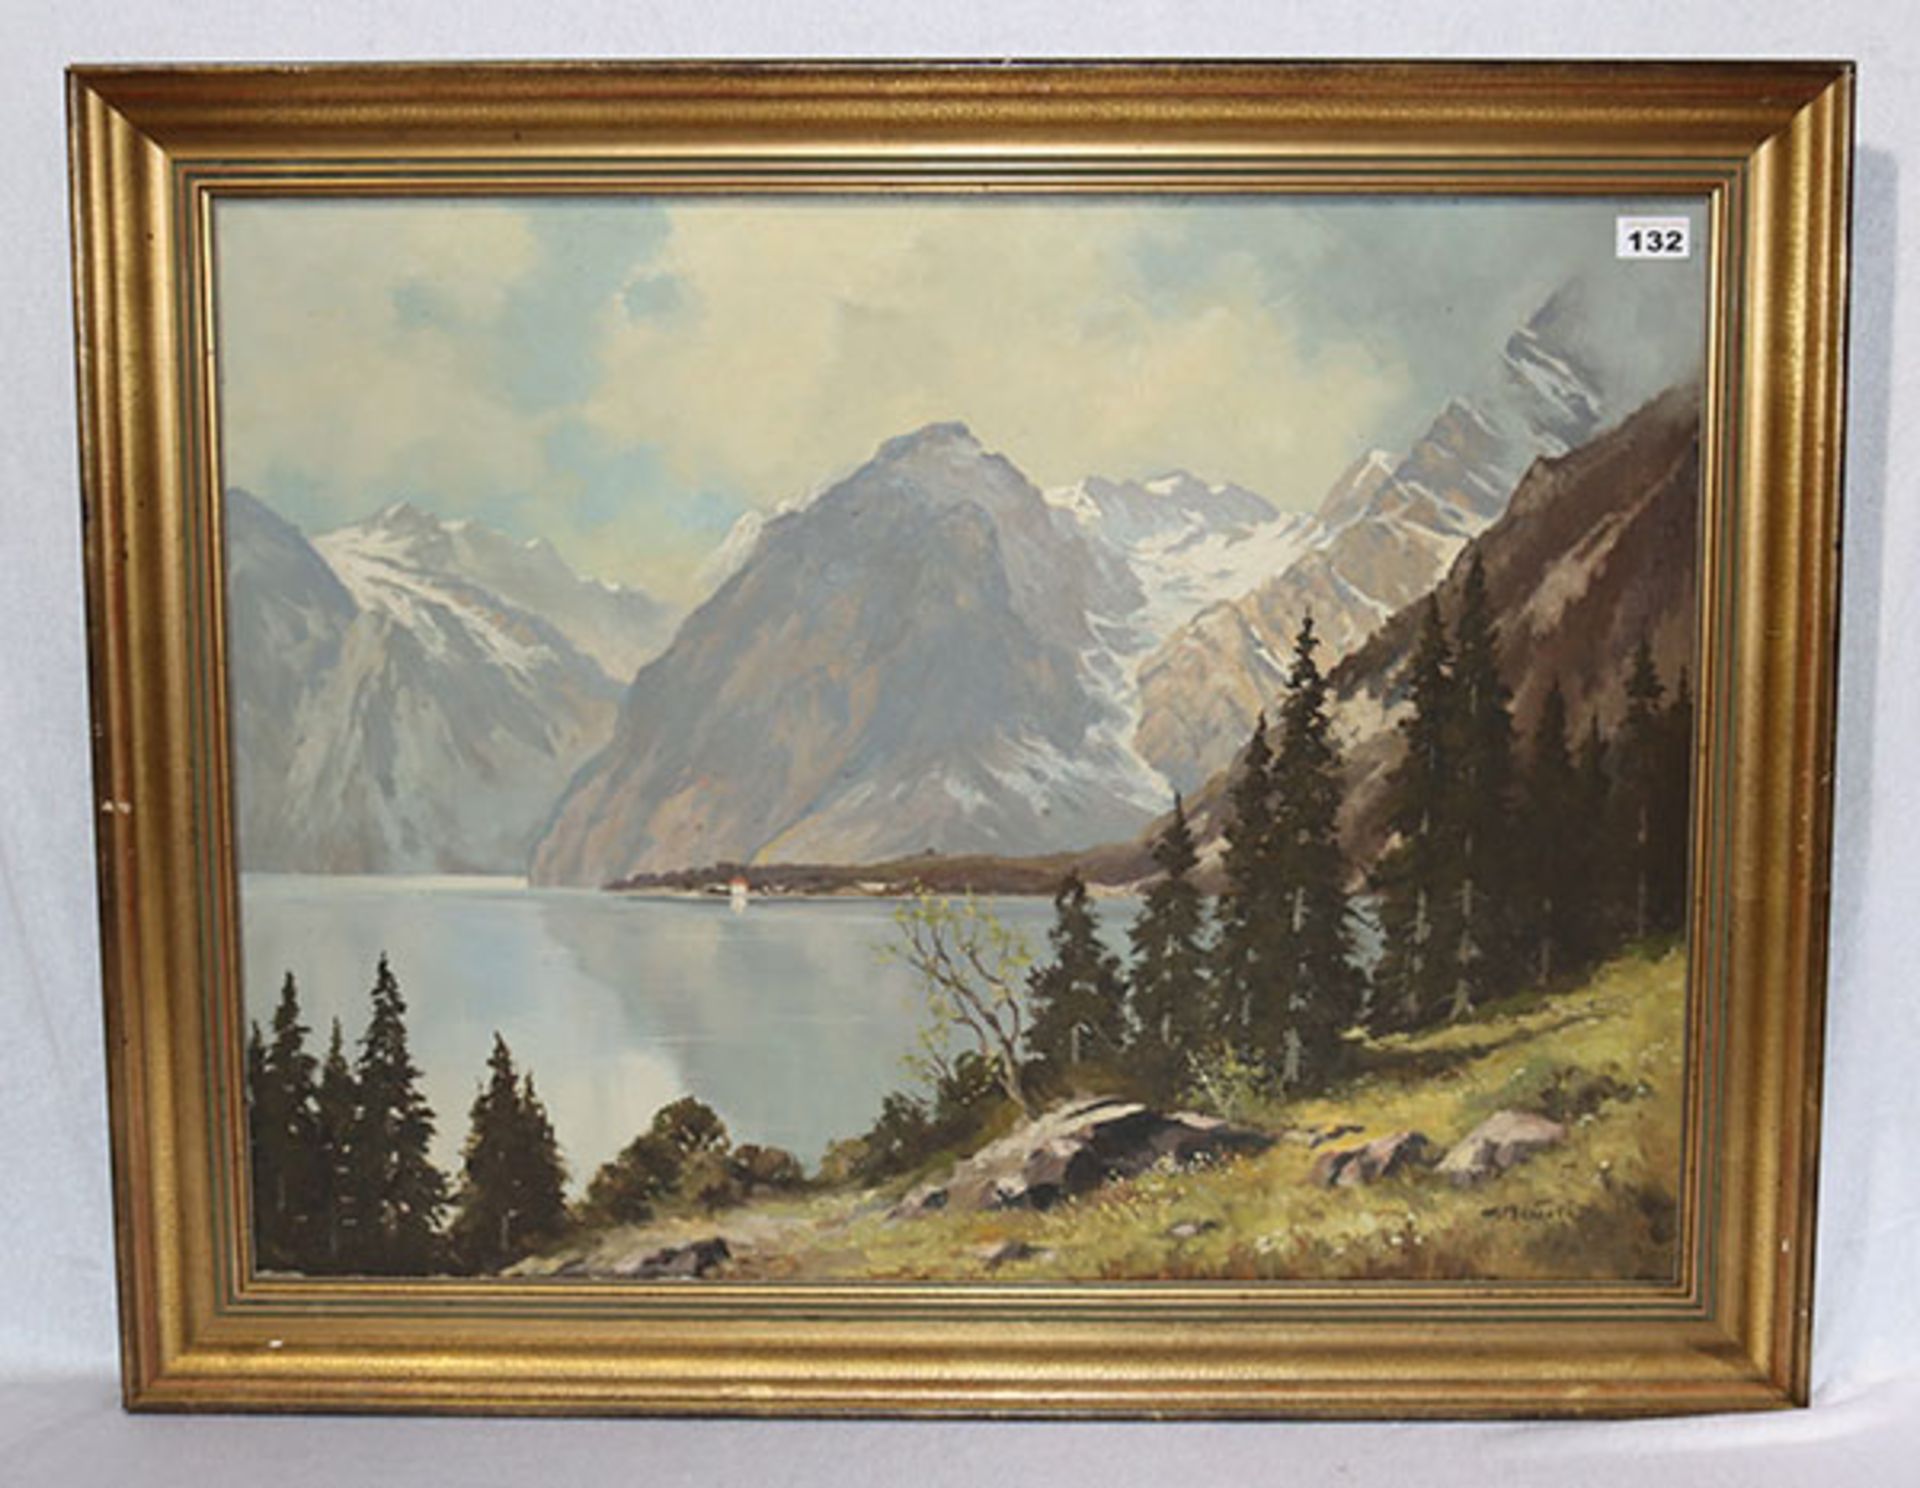 Gemälde ÖL/LW 'Hochgebirgs-Szenerie mit See', undeutlich signiert, gerahmt, Rahmen beschädigt, incl.